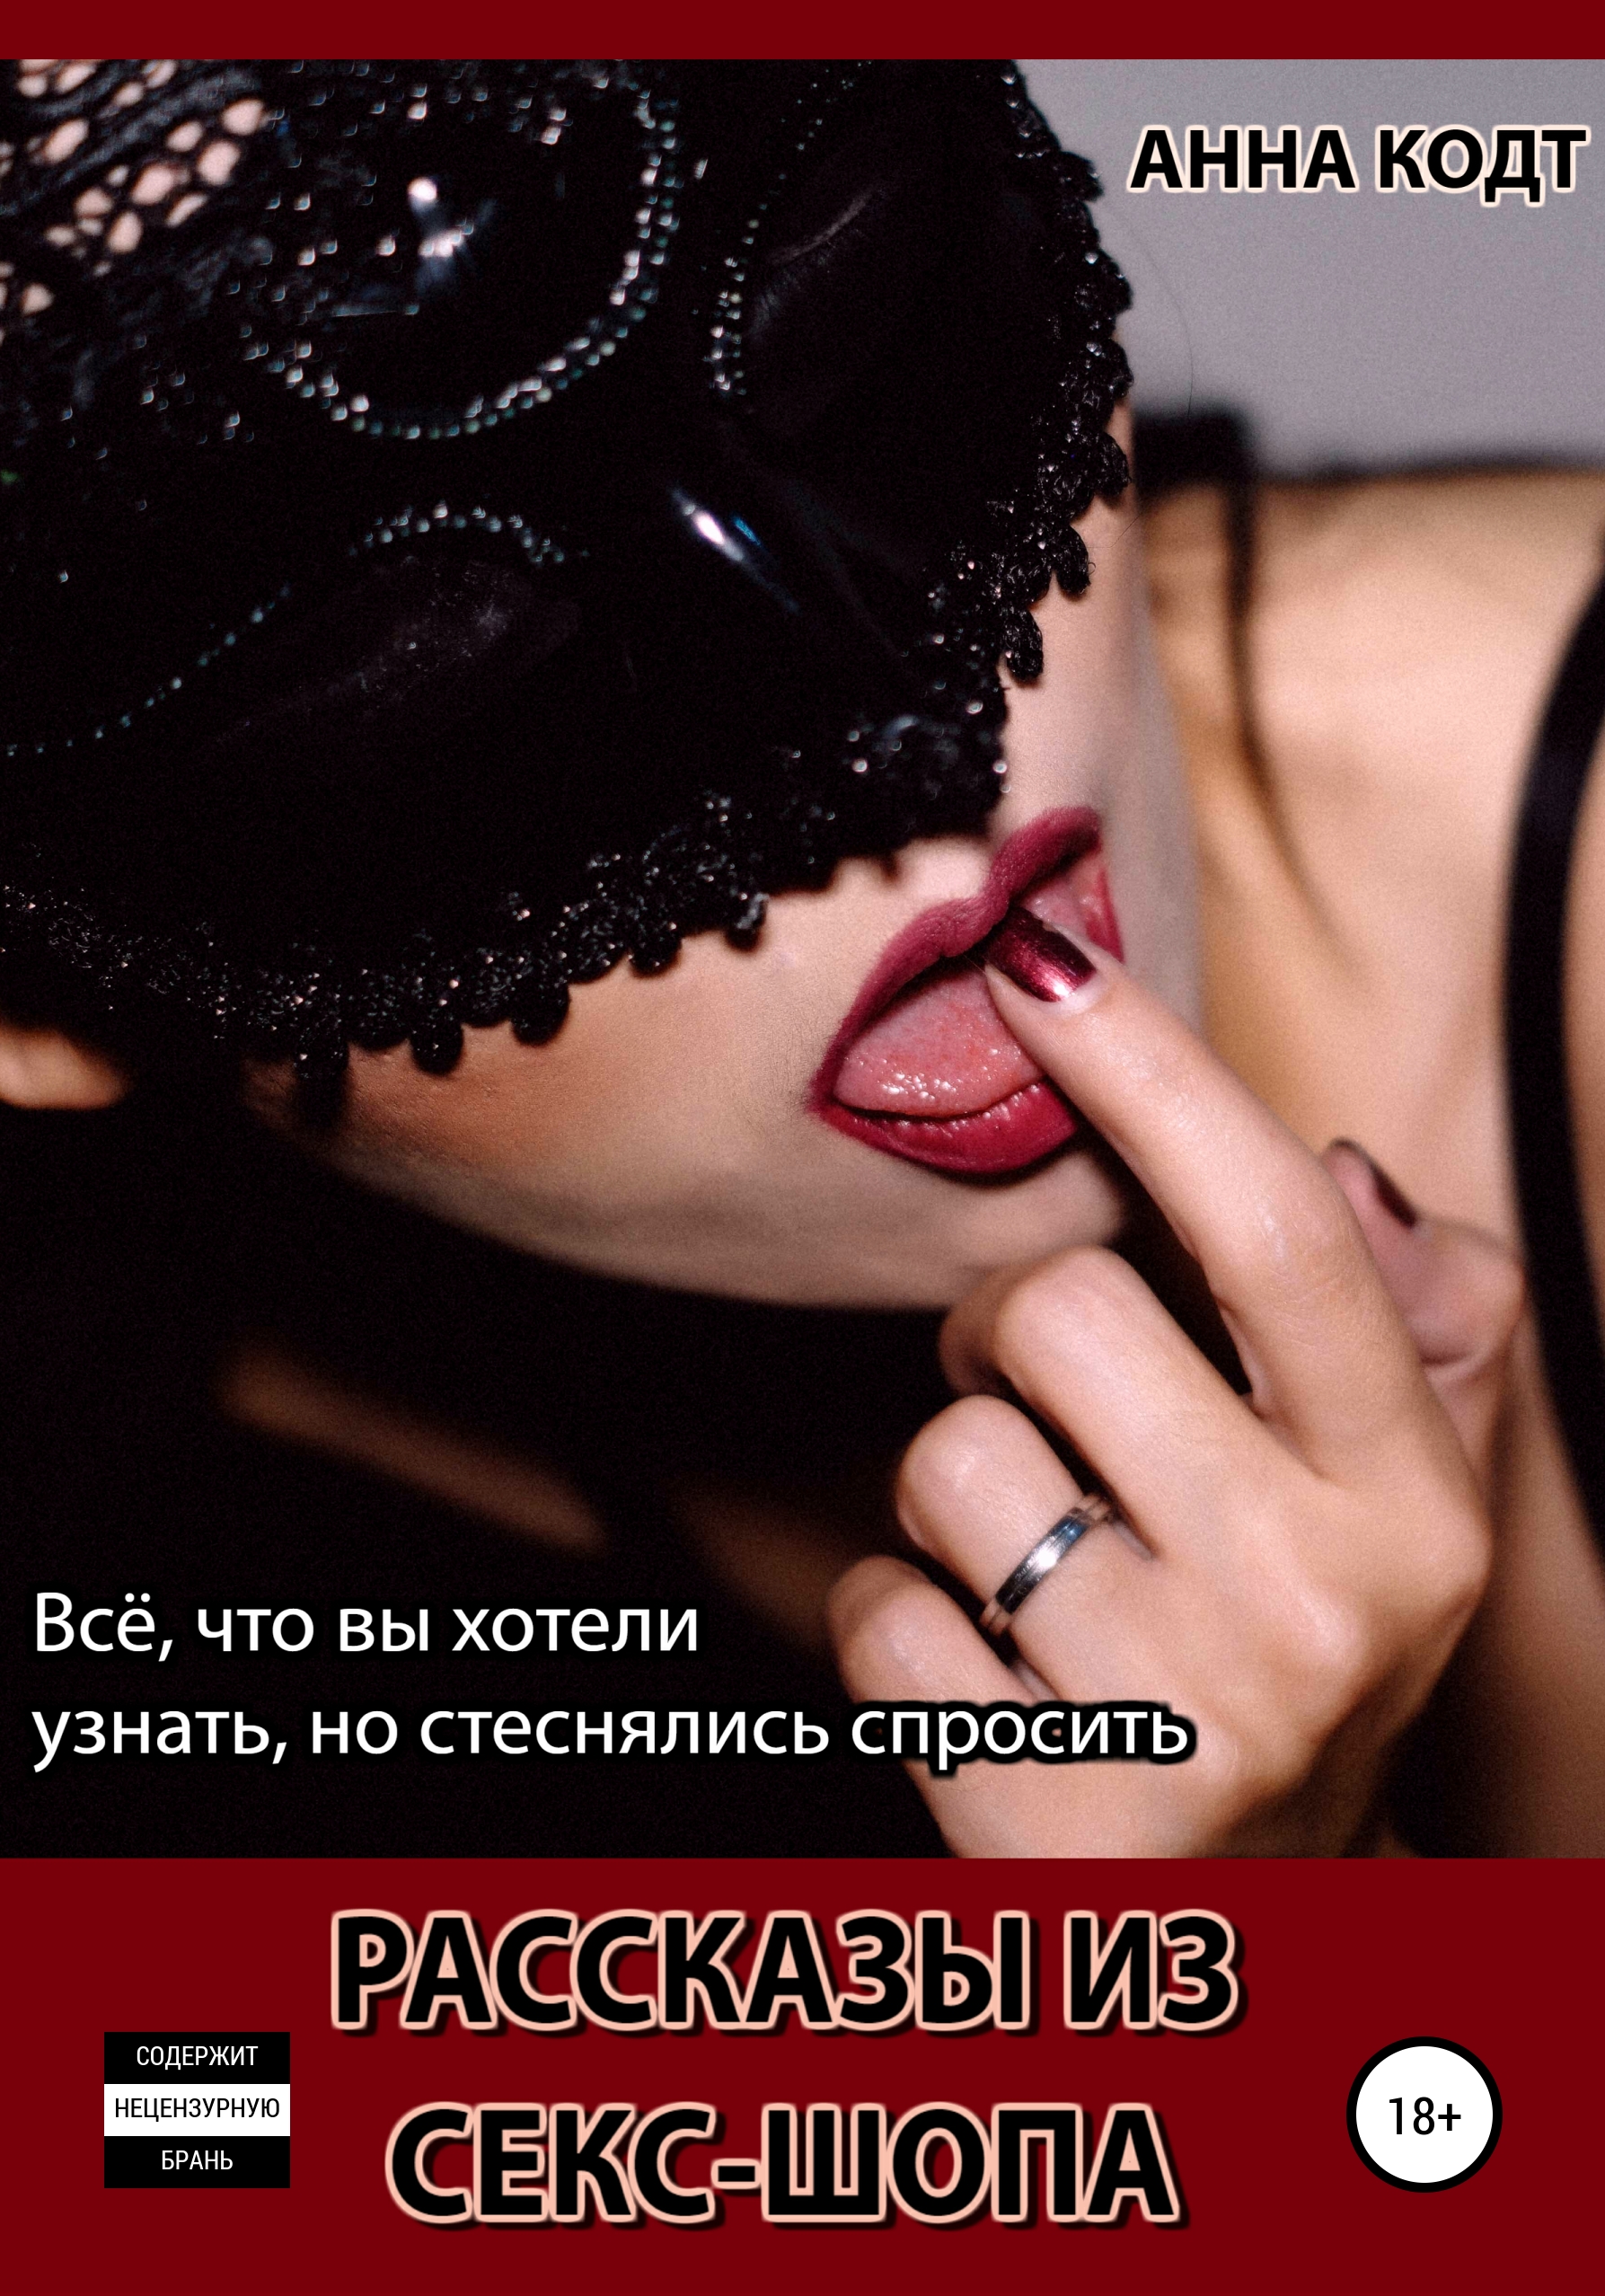 Рассказы из секс-шопа, Анна Кодт – скачать книгу fb2, epub, pdf на ЛитРес